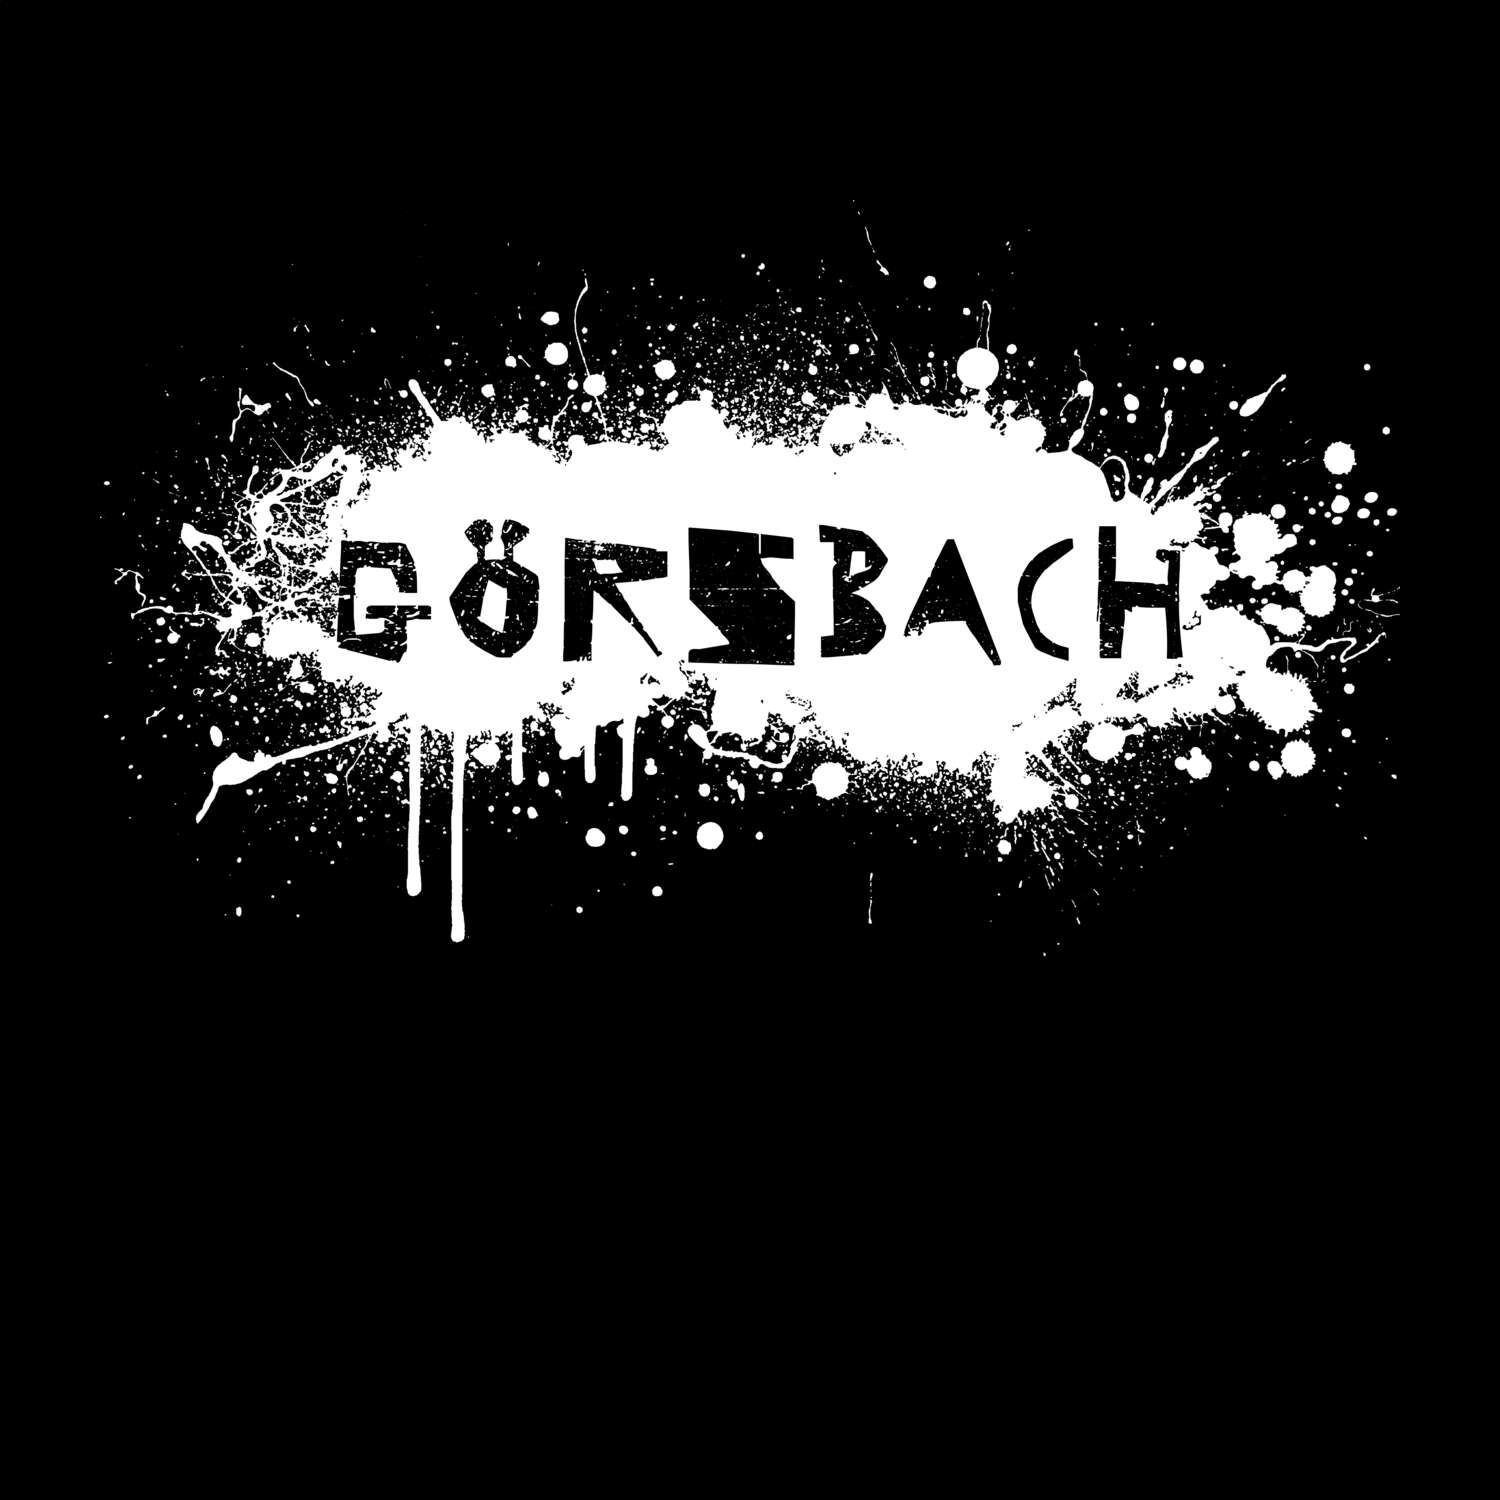 Görsbach T-Shirt »Paint Splash Punk«